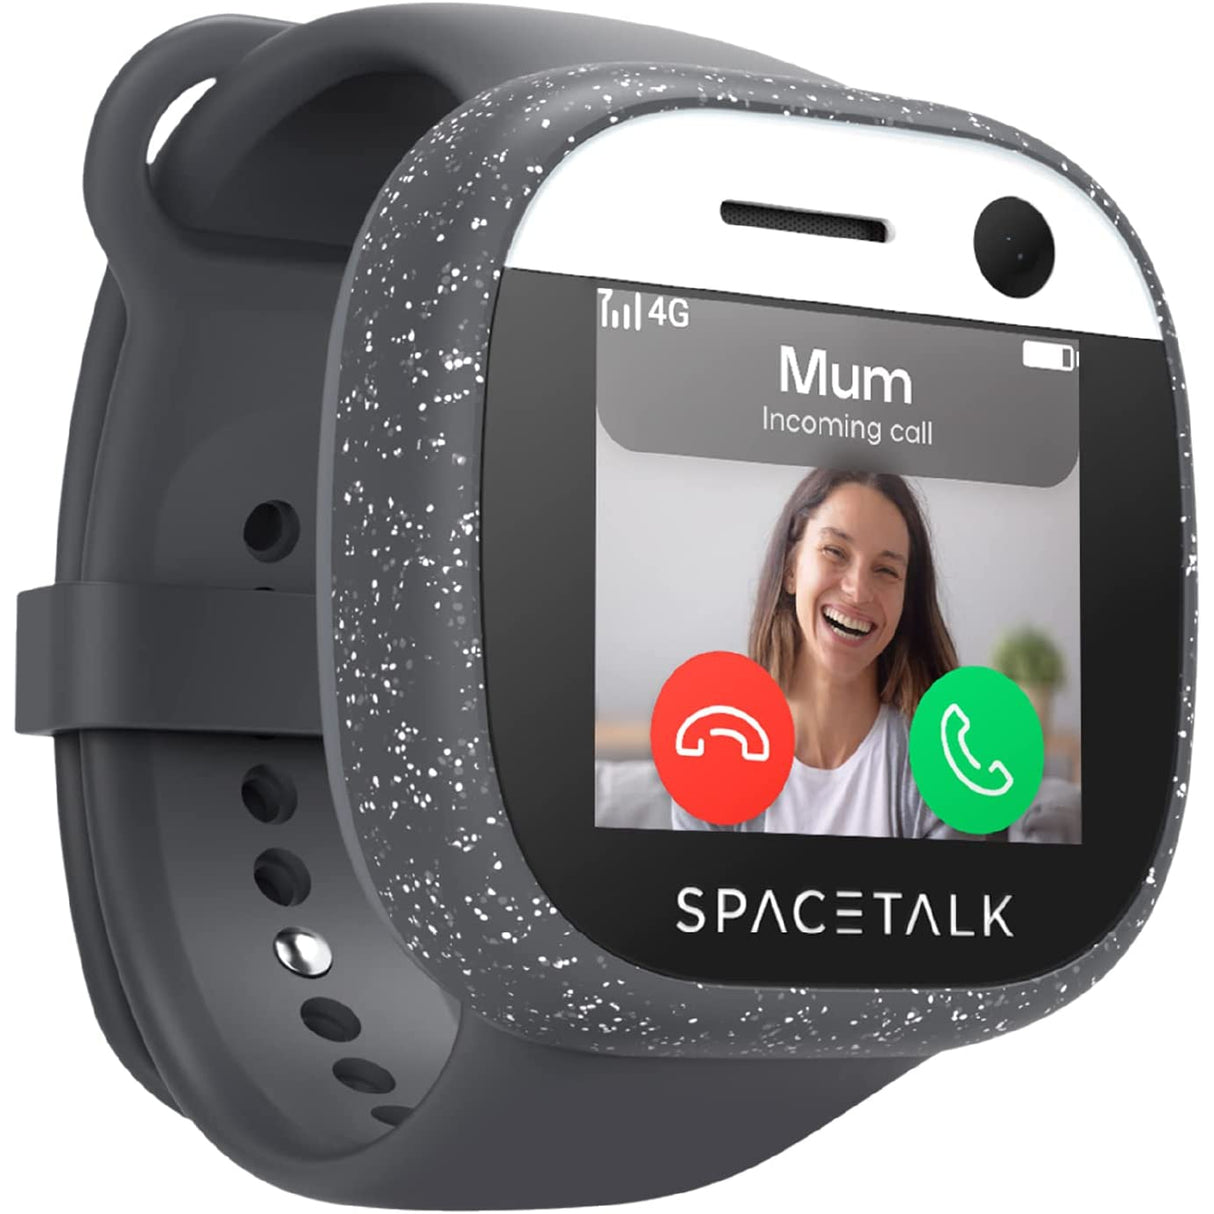 Spacetalk Adventurer 4G Kids Smart Watch